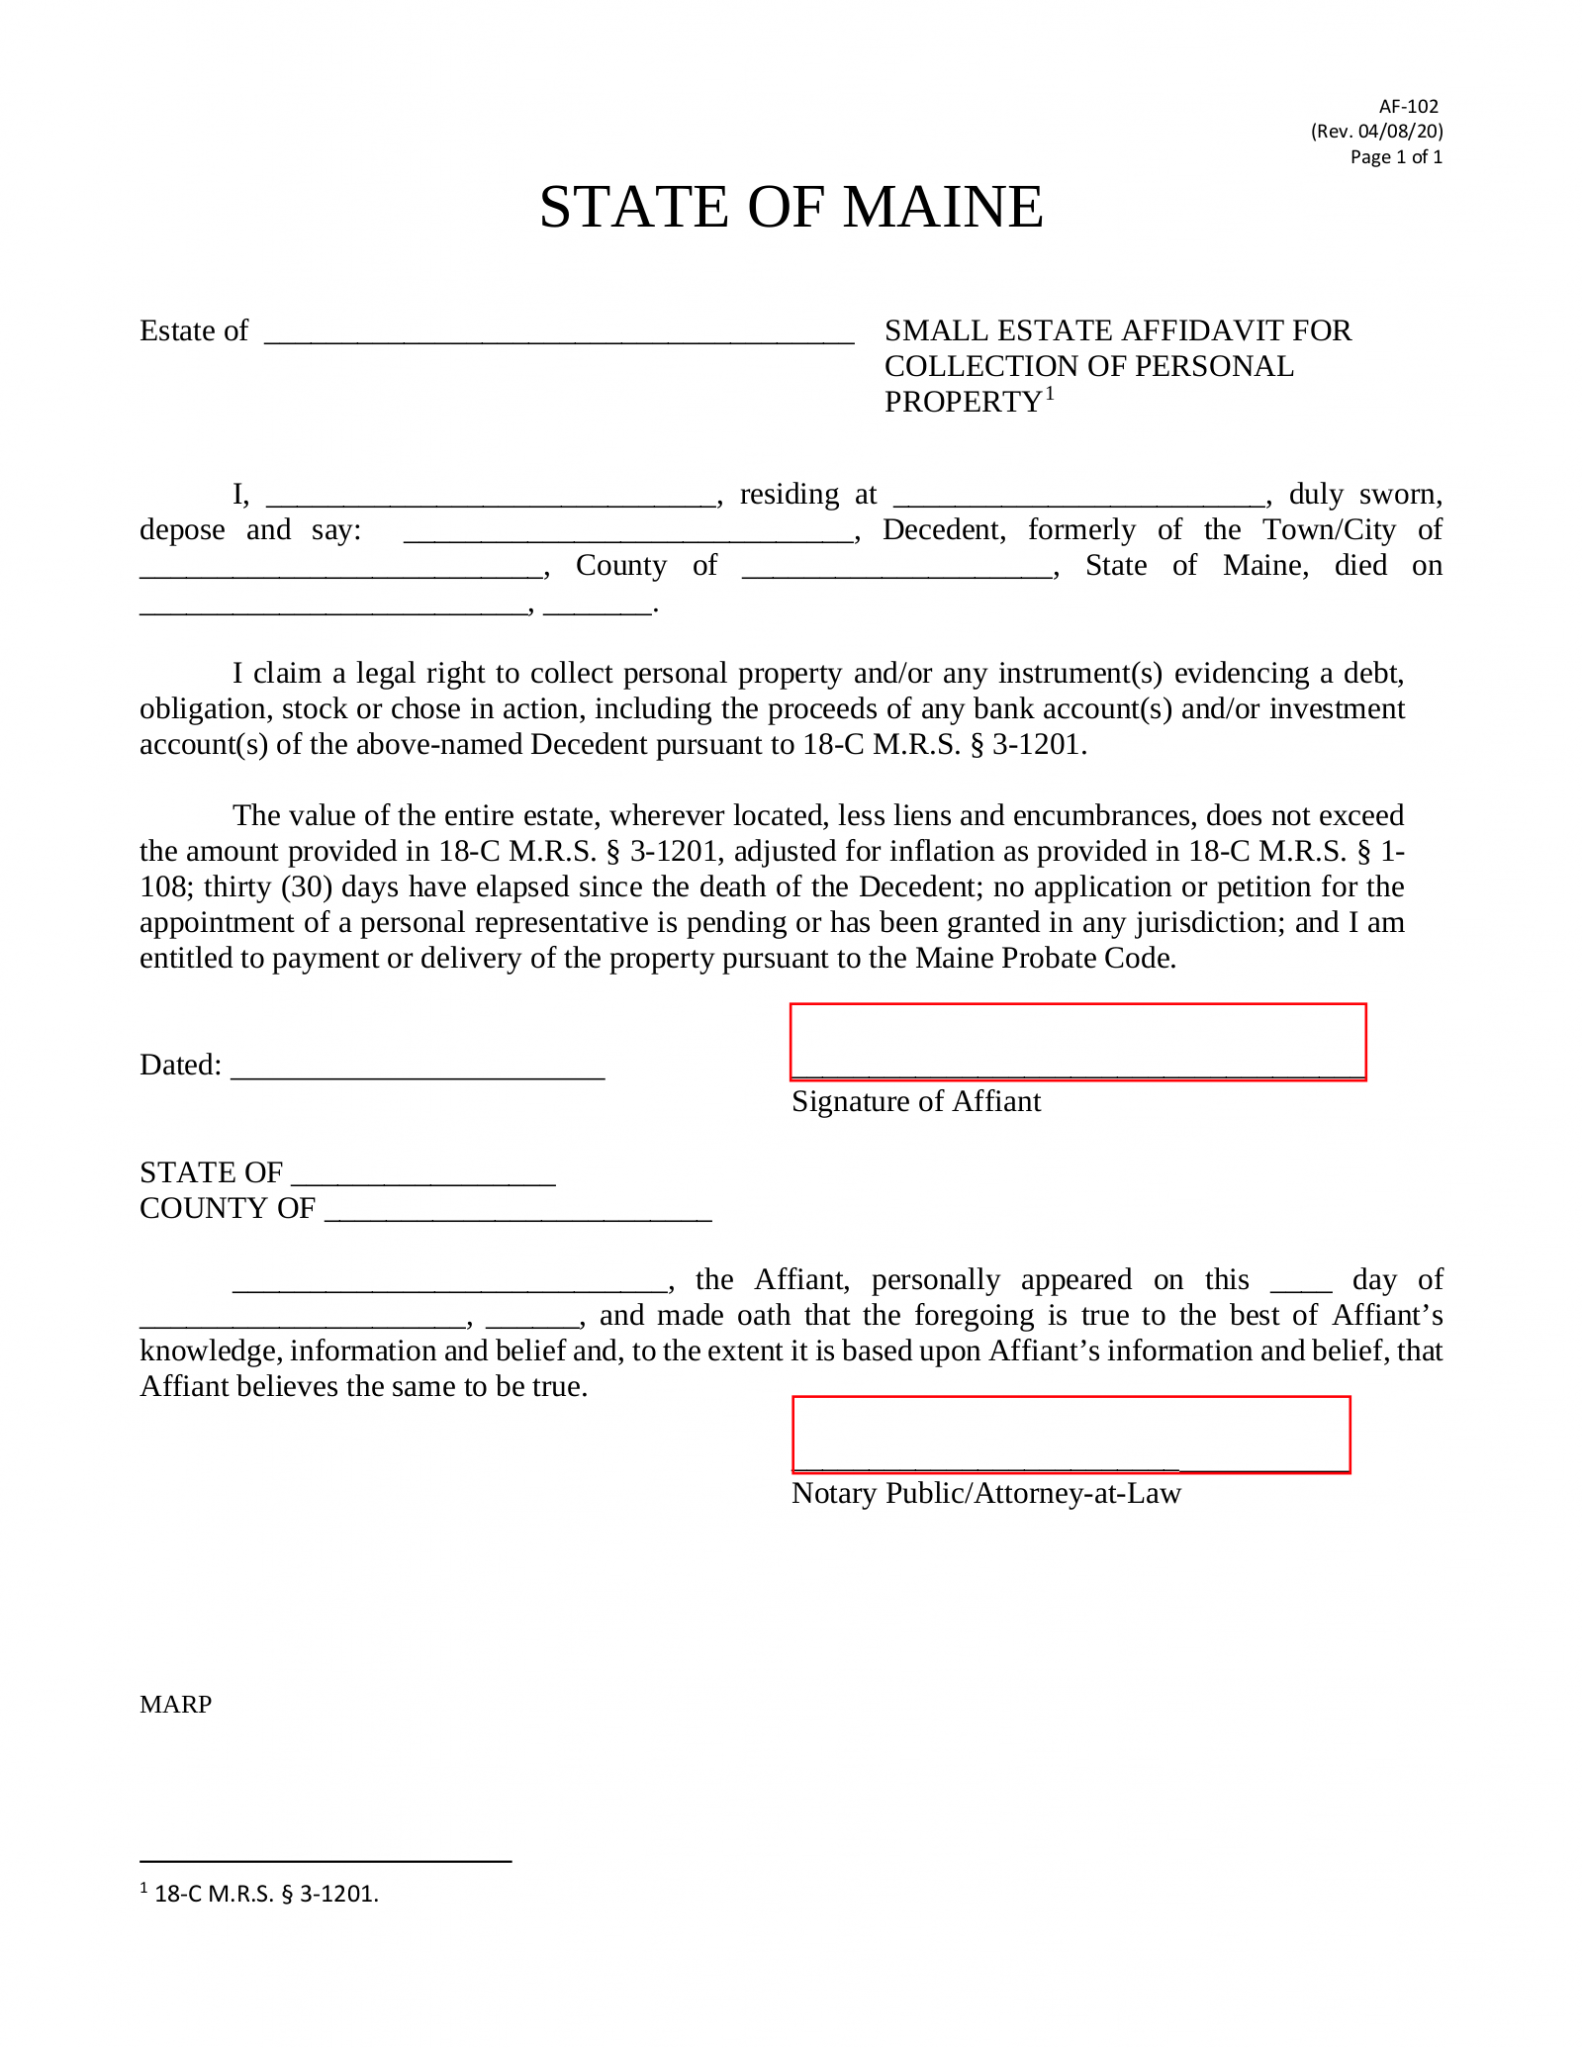 Free Maine Small Estate Affidavit Form Af 102 Pdf Eforms 6614